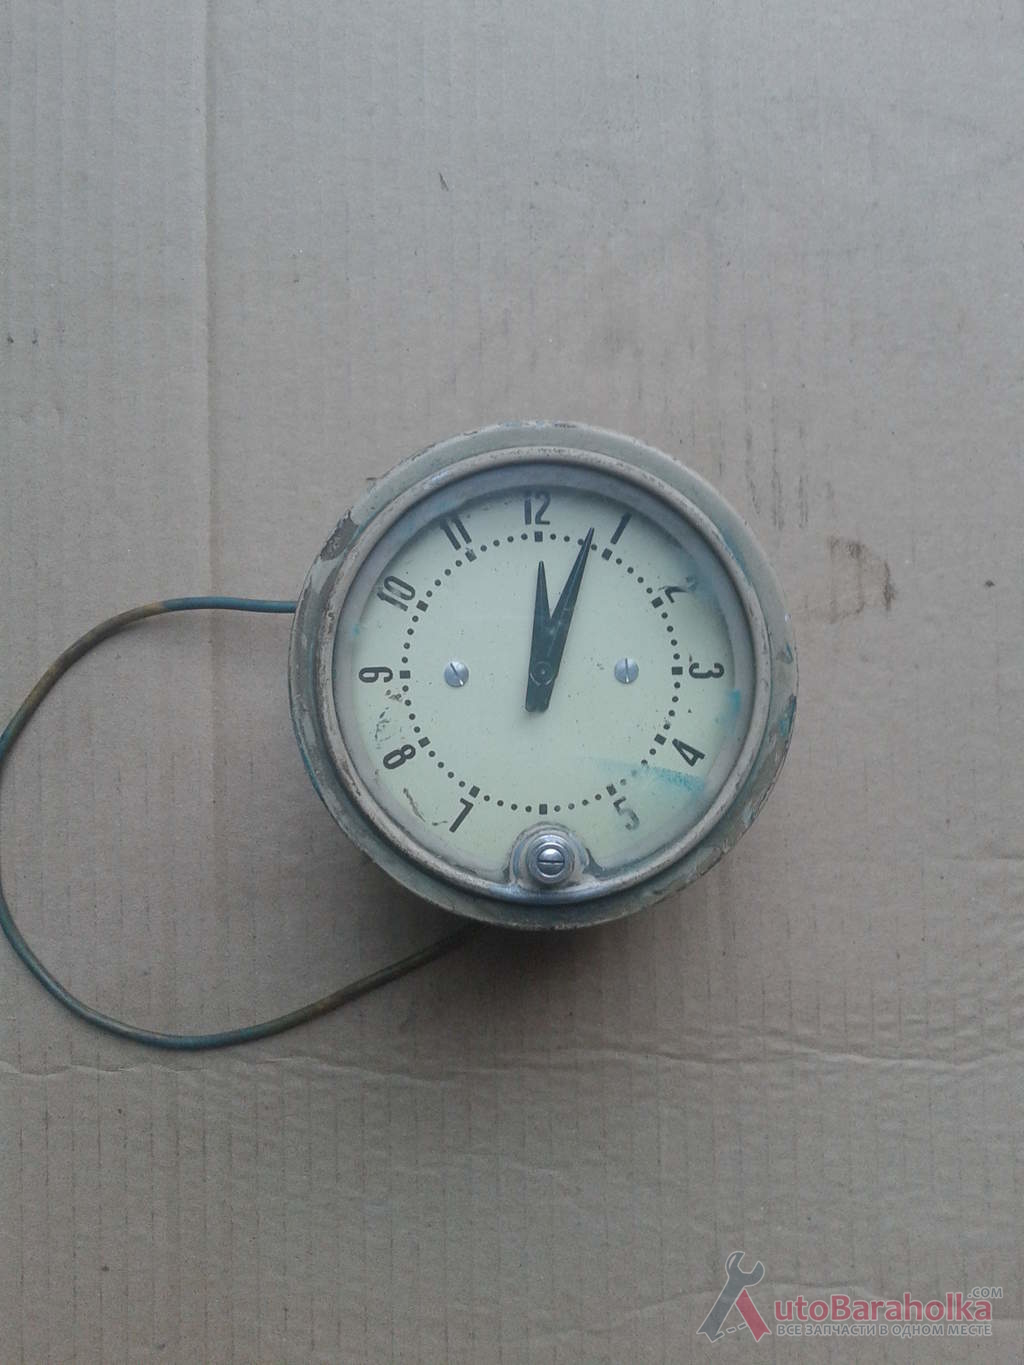 Продам Часы ГАЗ-20. В рабочем состоянии Днепропетровск